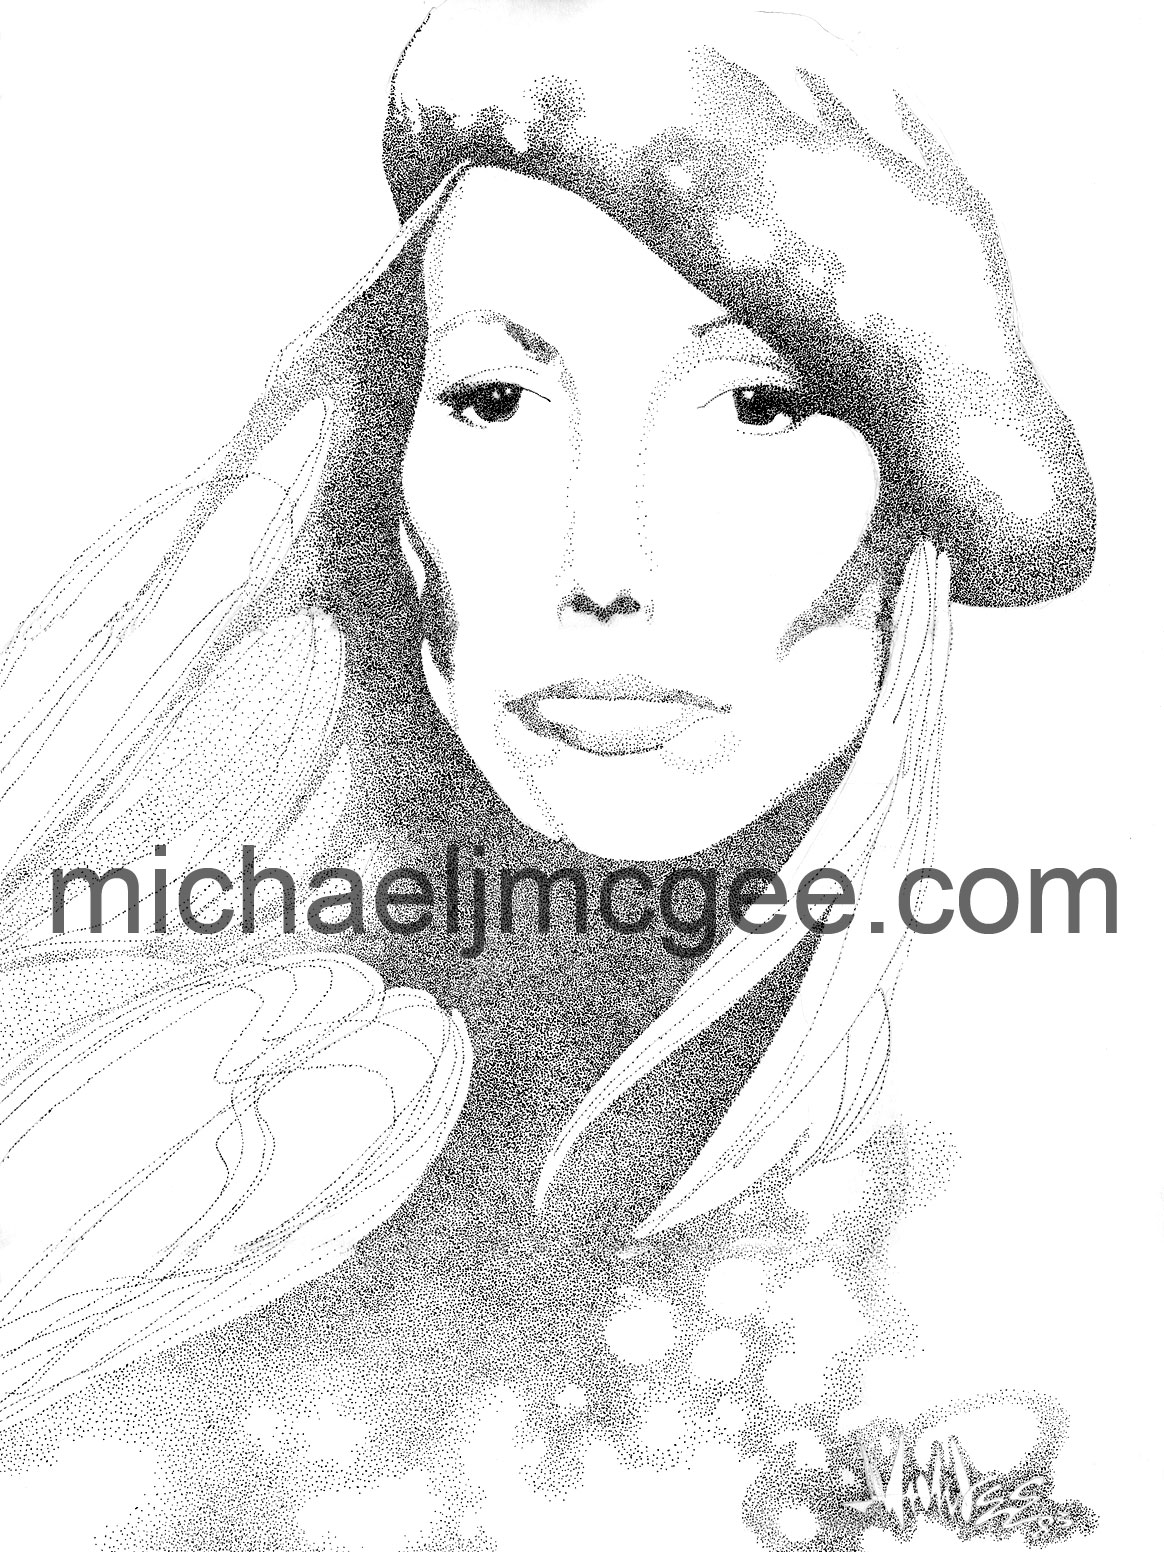 Joni Mitchell / MJM Artworks / michaeljmcgee.com